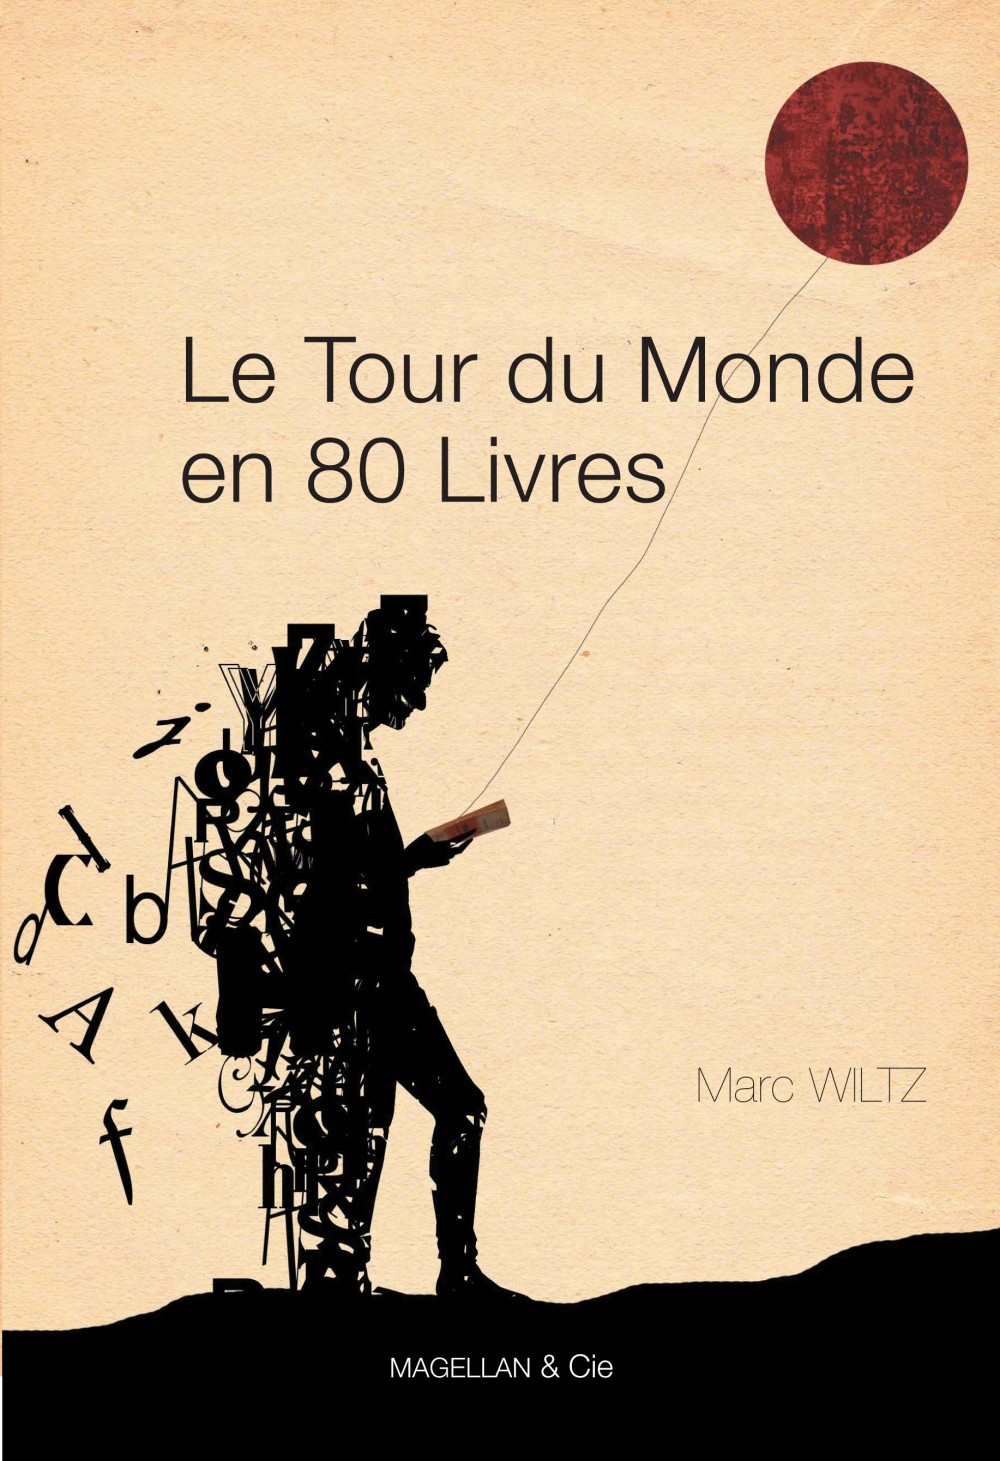 « Le Tour du monde en 80 livres », de Marc Wiltz, Magellan & Cie éditeur, 2011